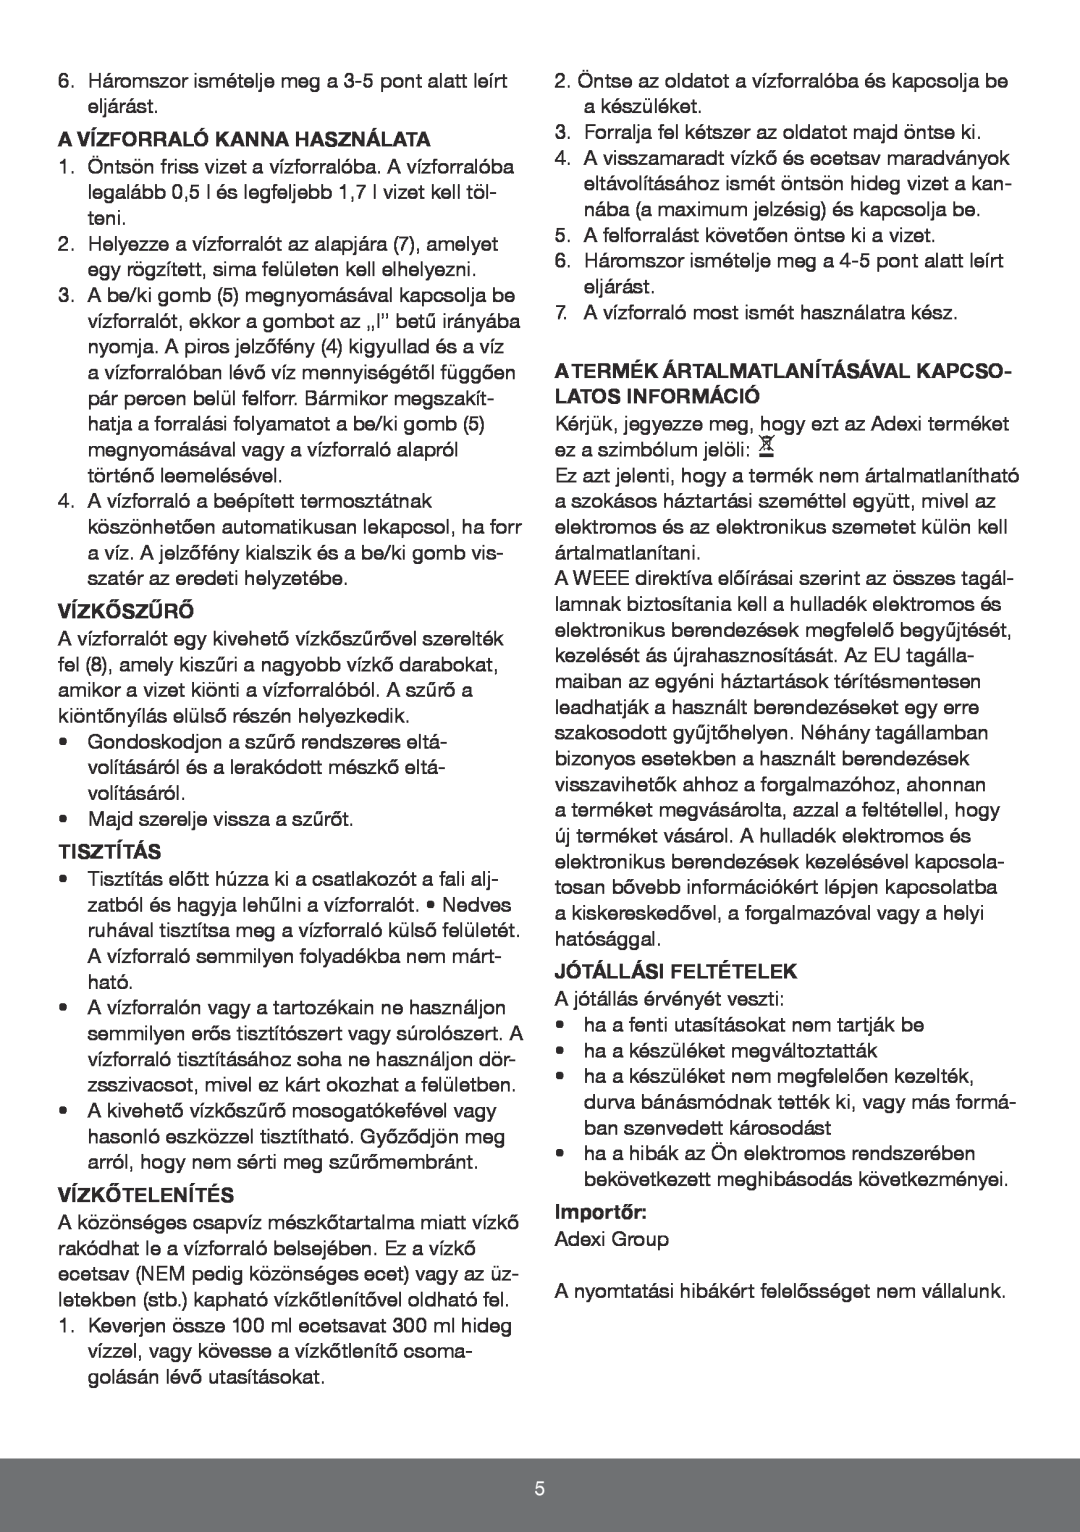 Melissa 645-096 manual A Vízforraló Kanna Használata, Vízkőszűrő, Tisztítás, Vízkőtelenítés, Jótállási Feltételek, Importőr 